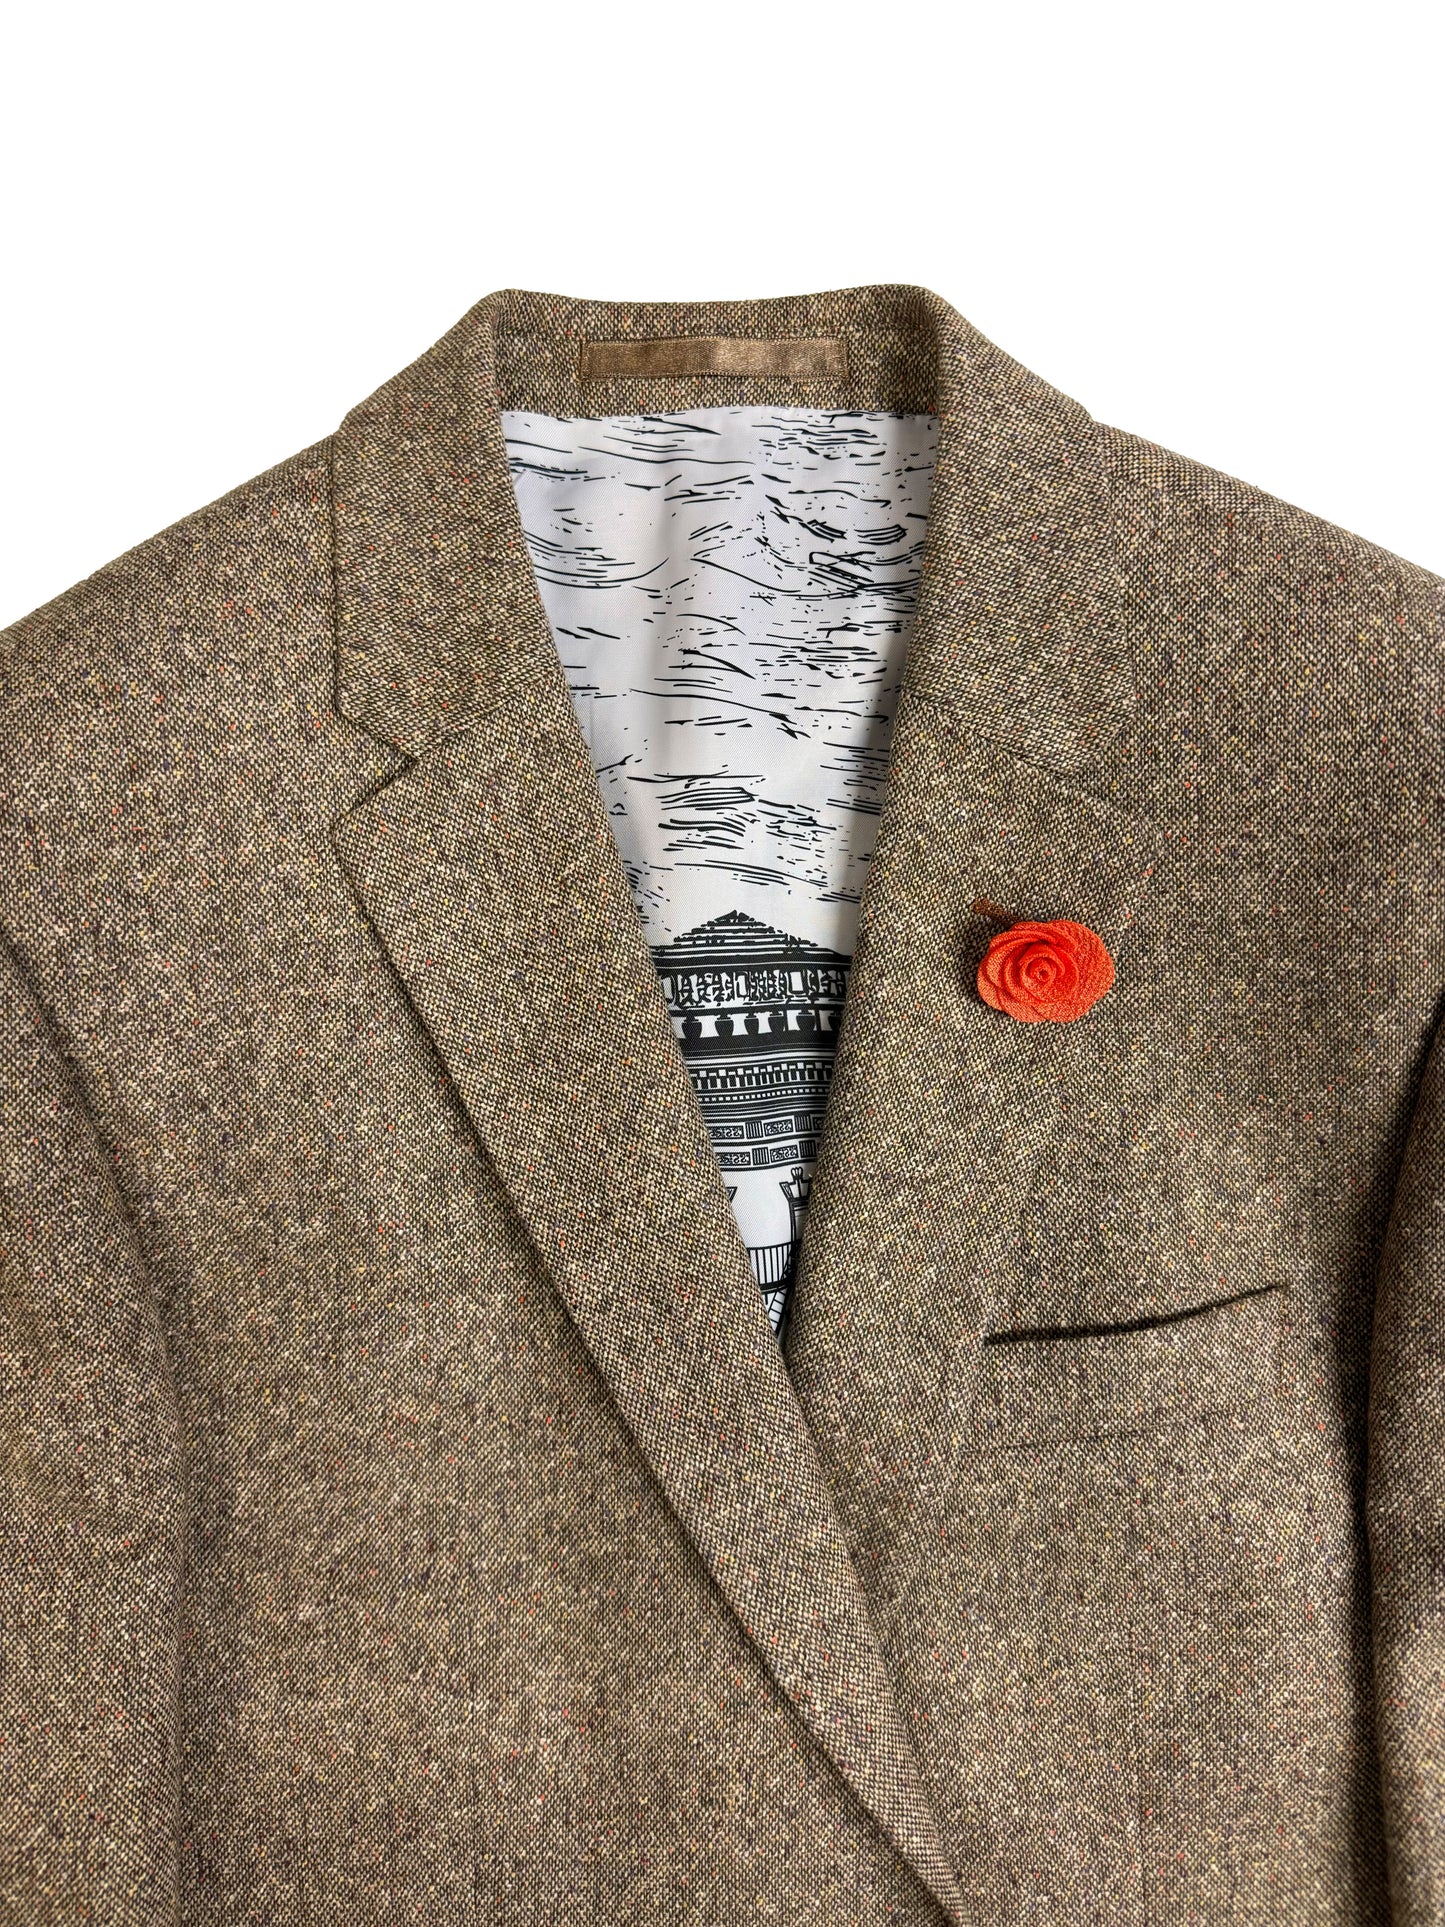 Men's Beige Tweed Wool Cotton Jacket